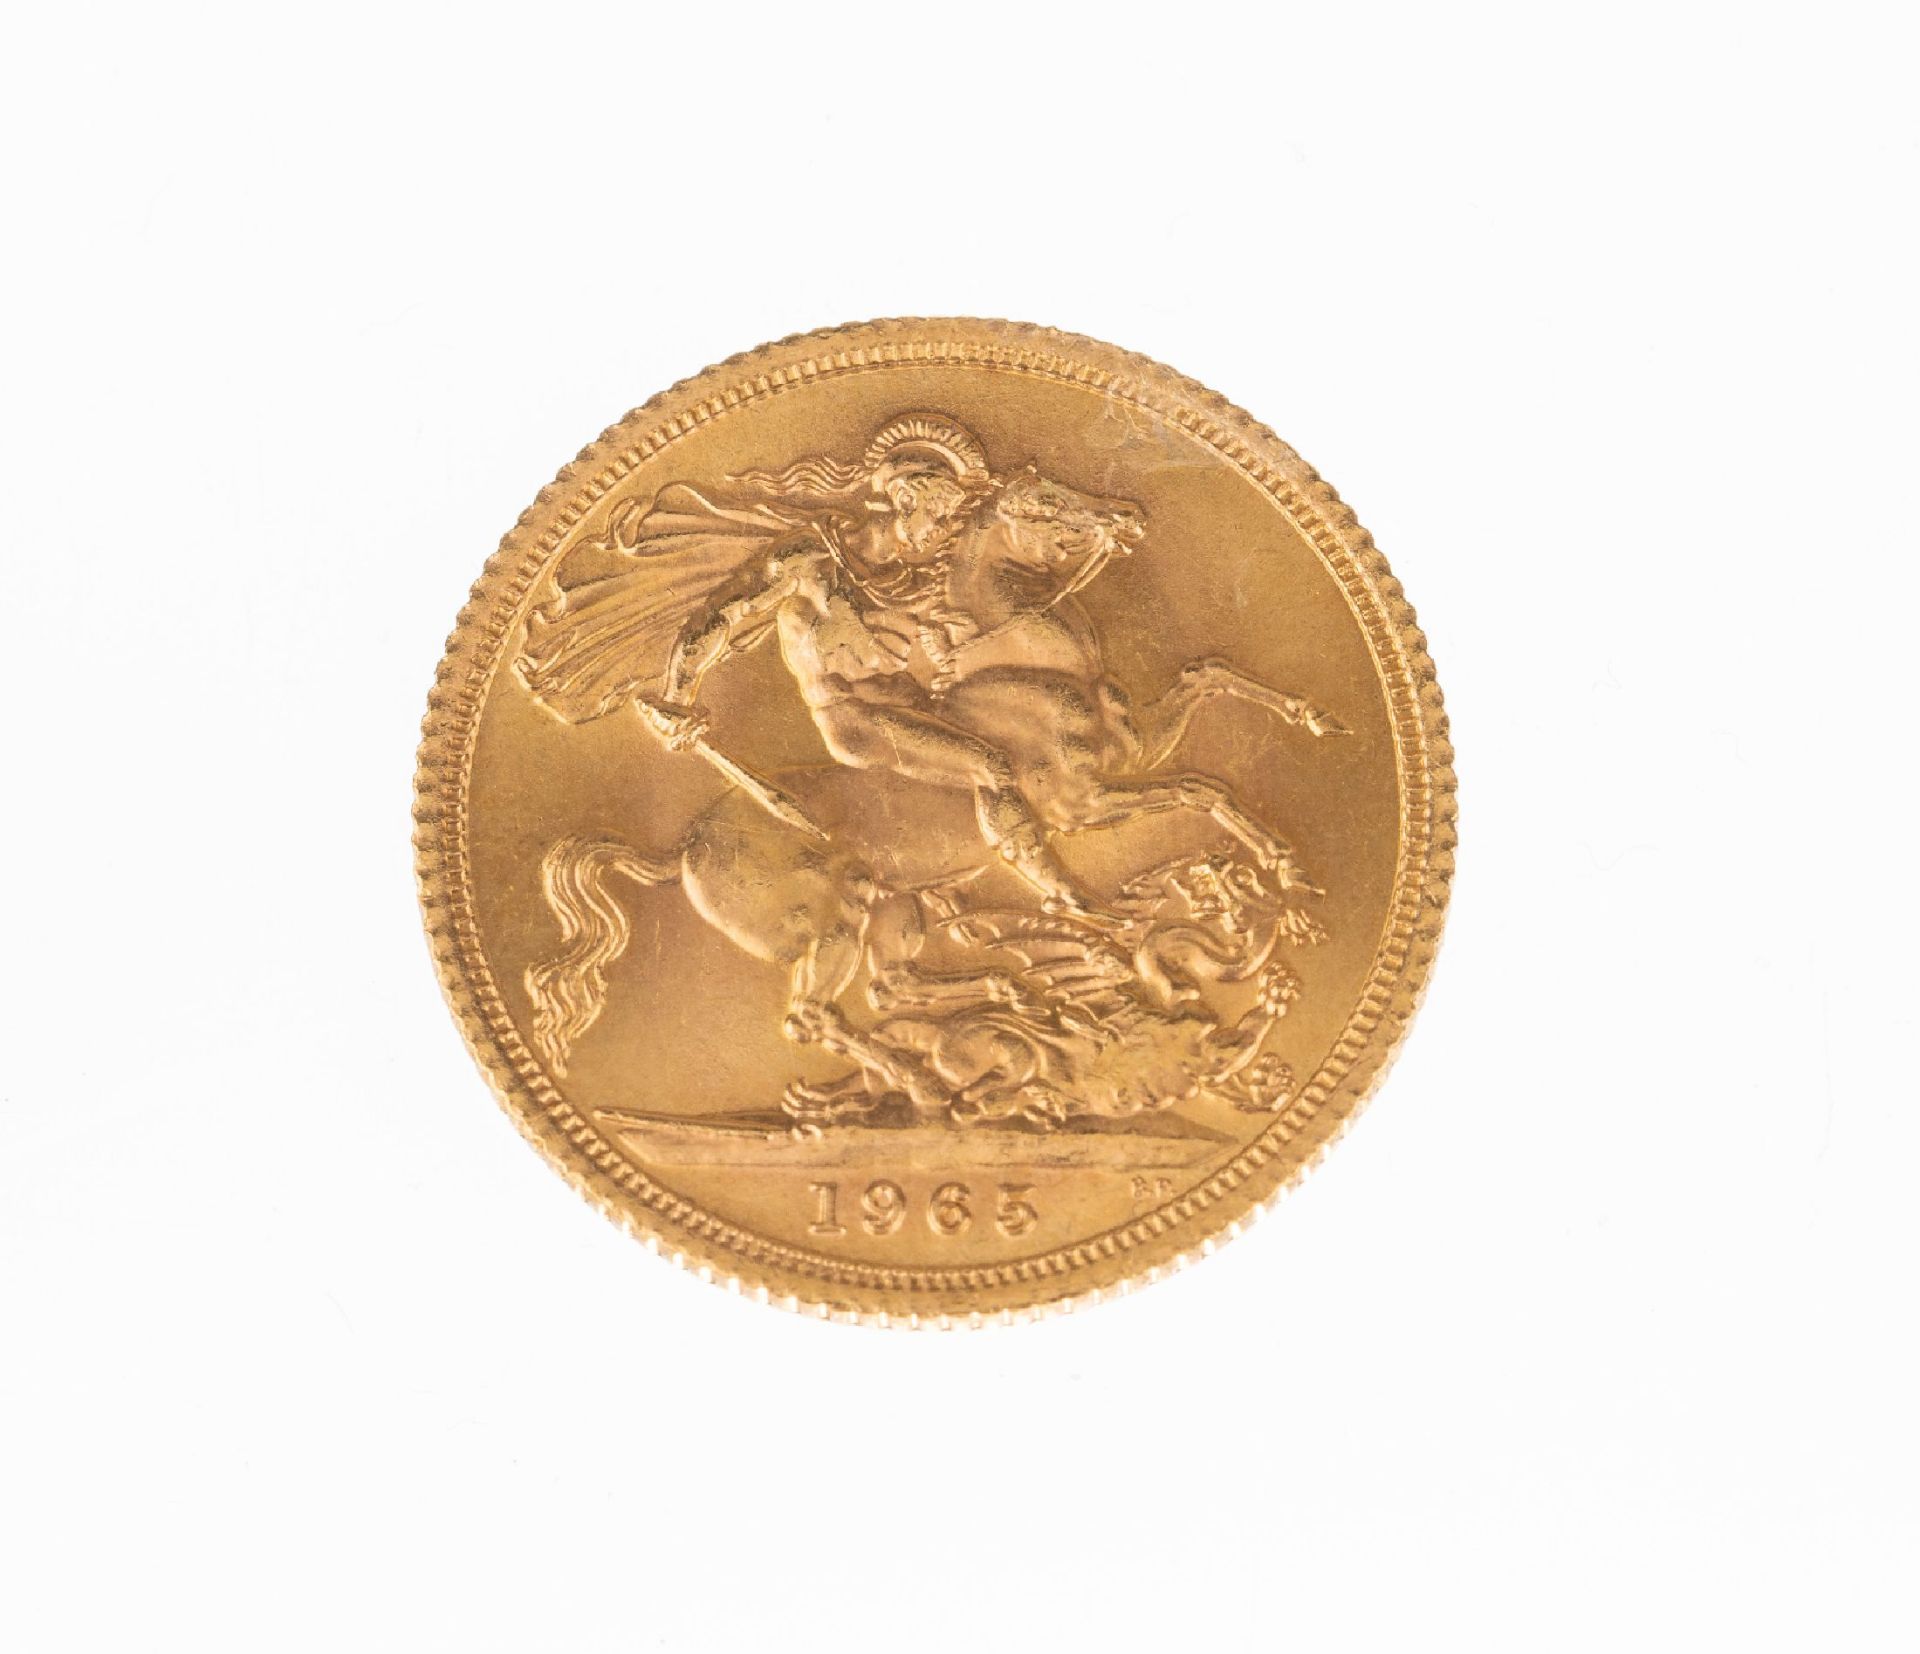 Goldmünze Sovereign, Großbritannien, 1965, Elizabeth II, - Bild 2 aus 2